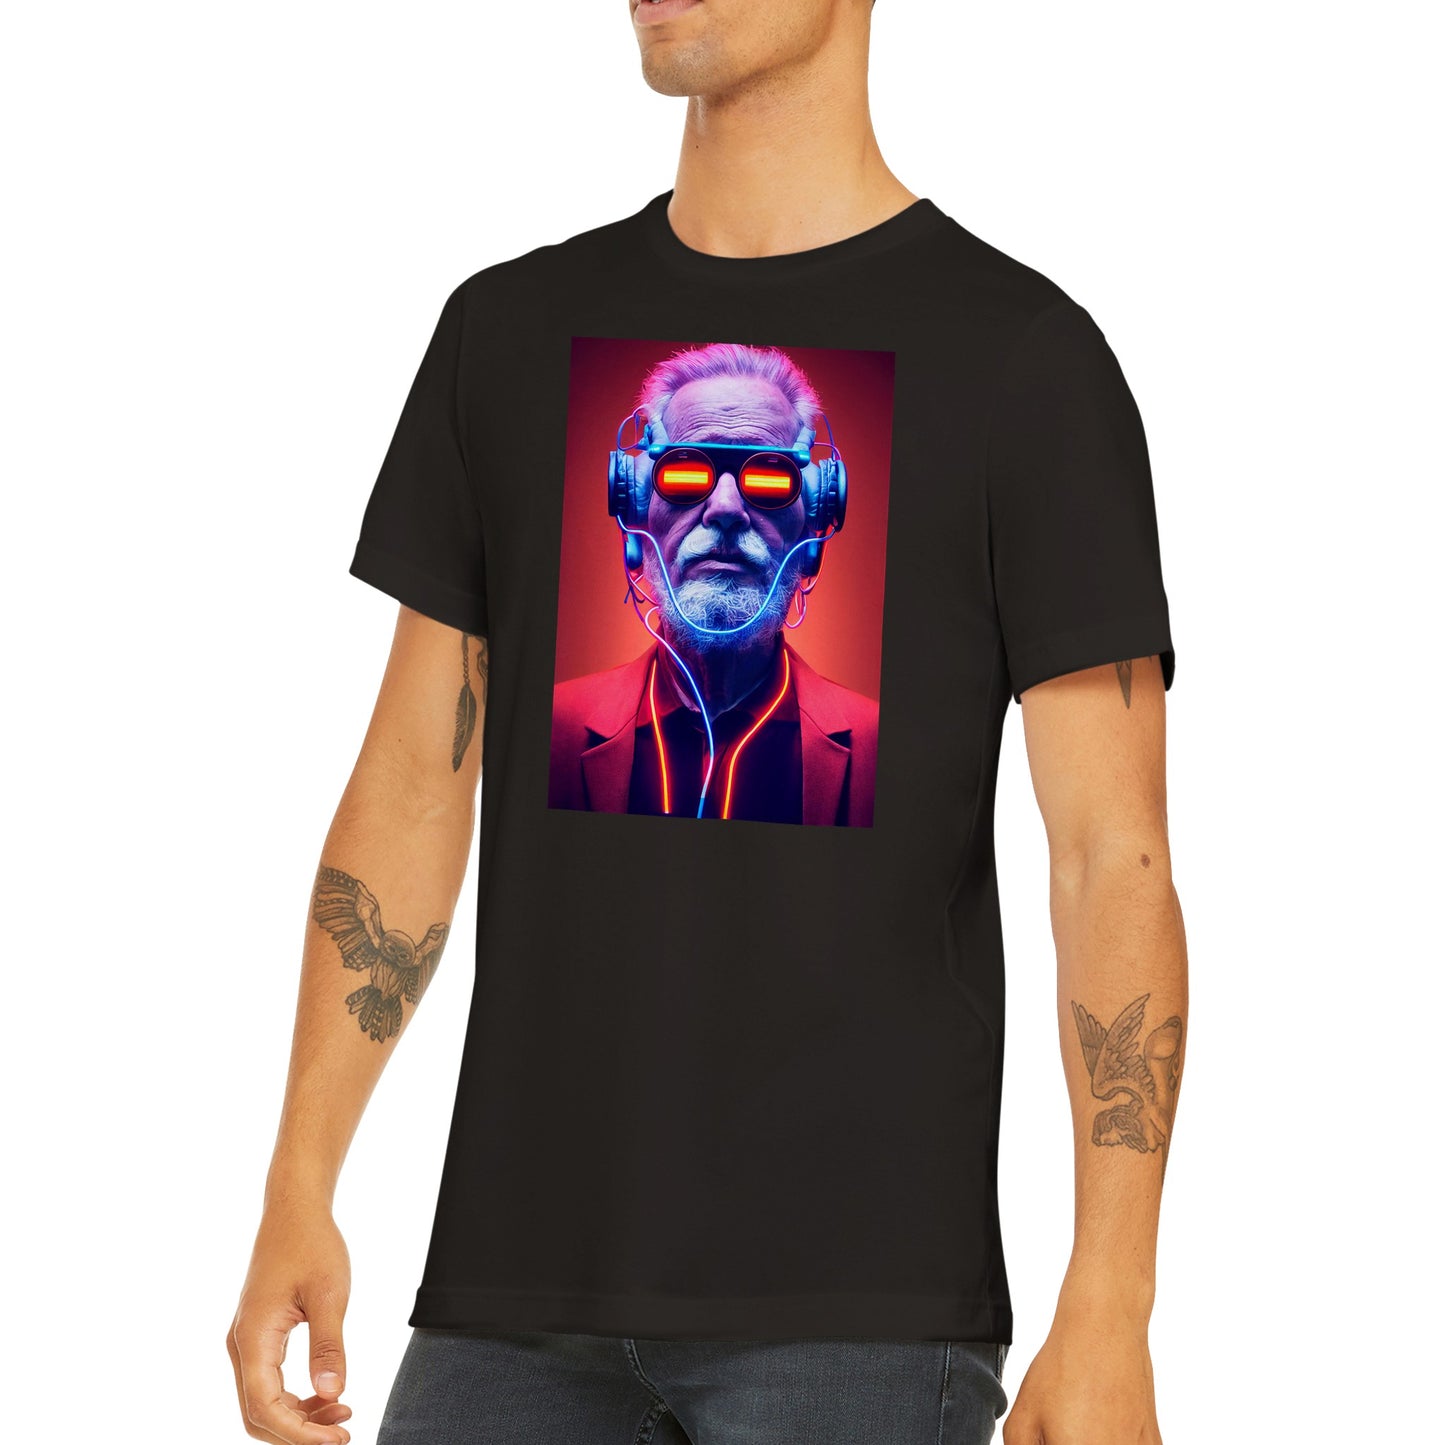 Cyberpunk man T-shirt